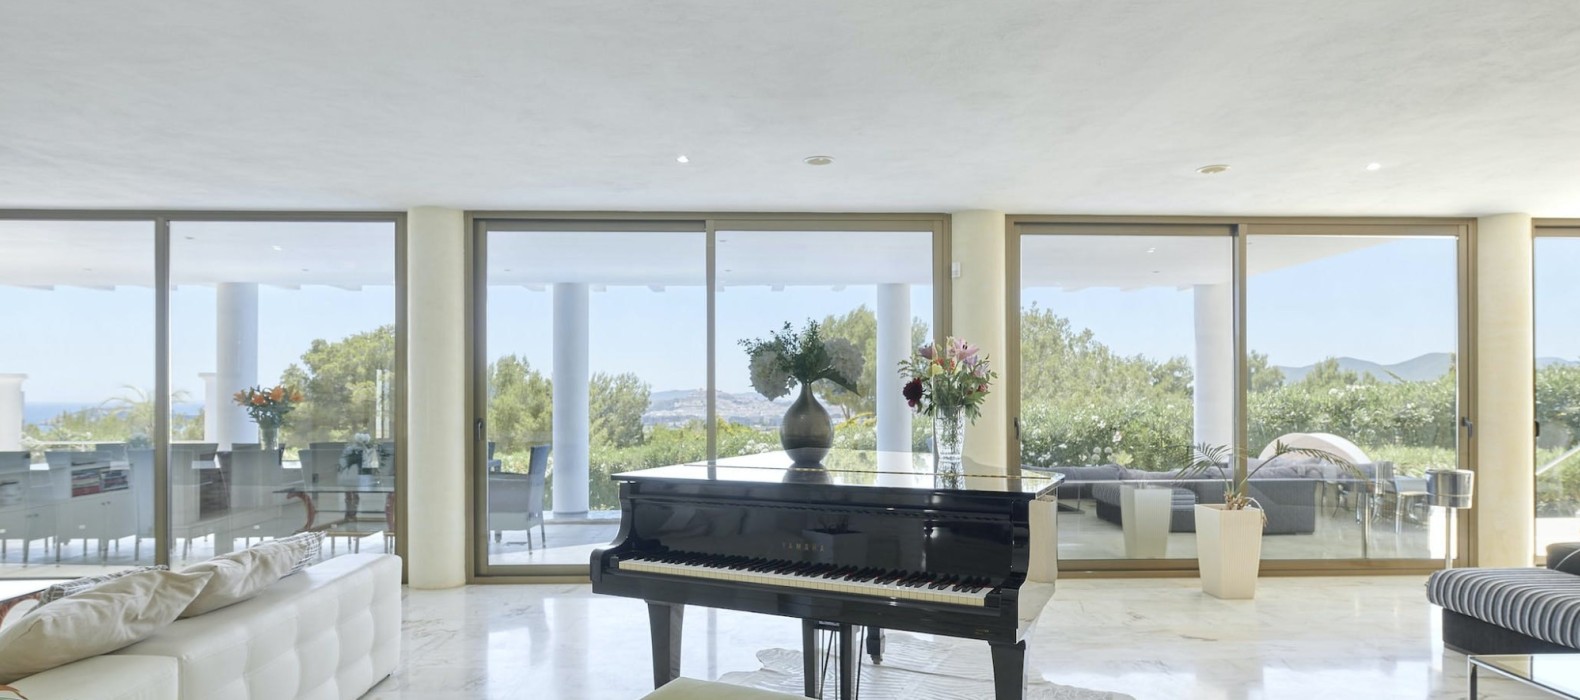 Living room with piano of Villa Riva Alto in Ibiza